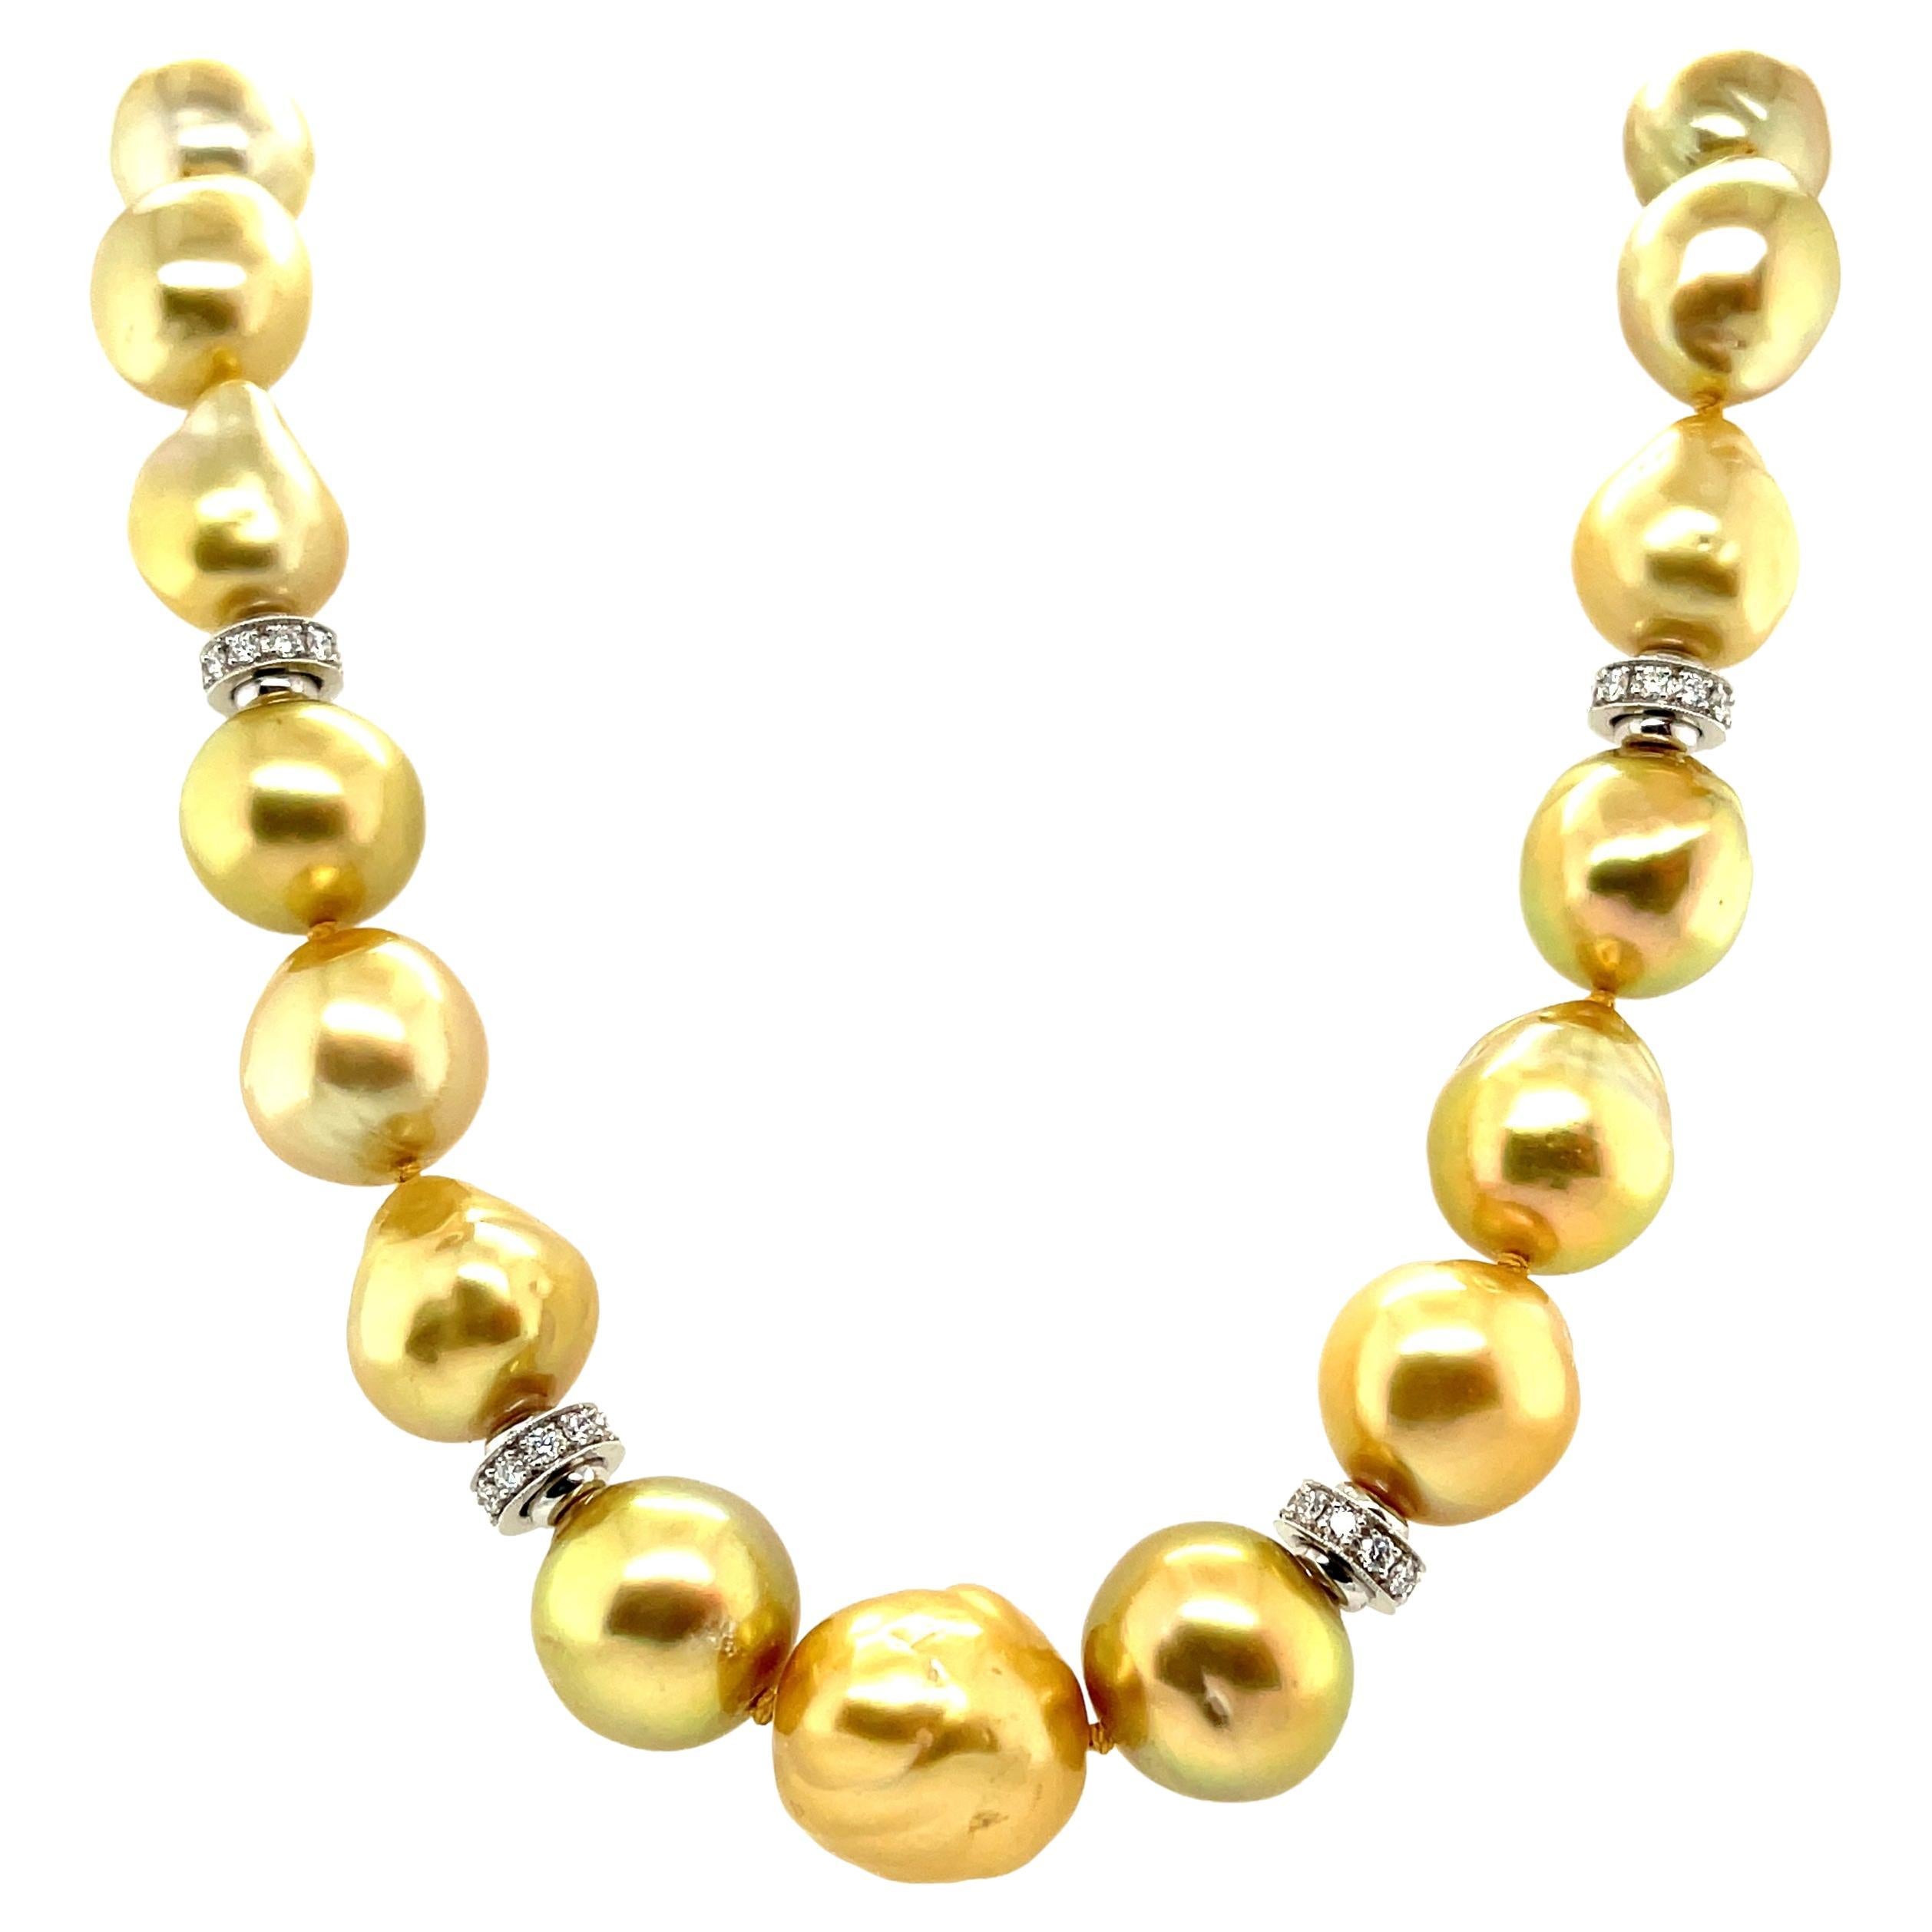 Collier de perles des mers du Sud en or avec diamants et accents en or, 21 pouces